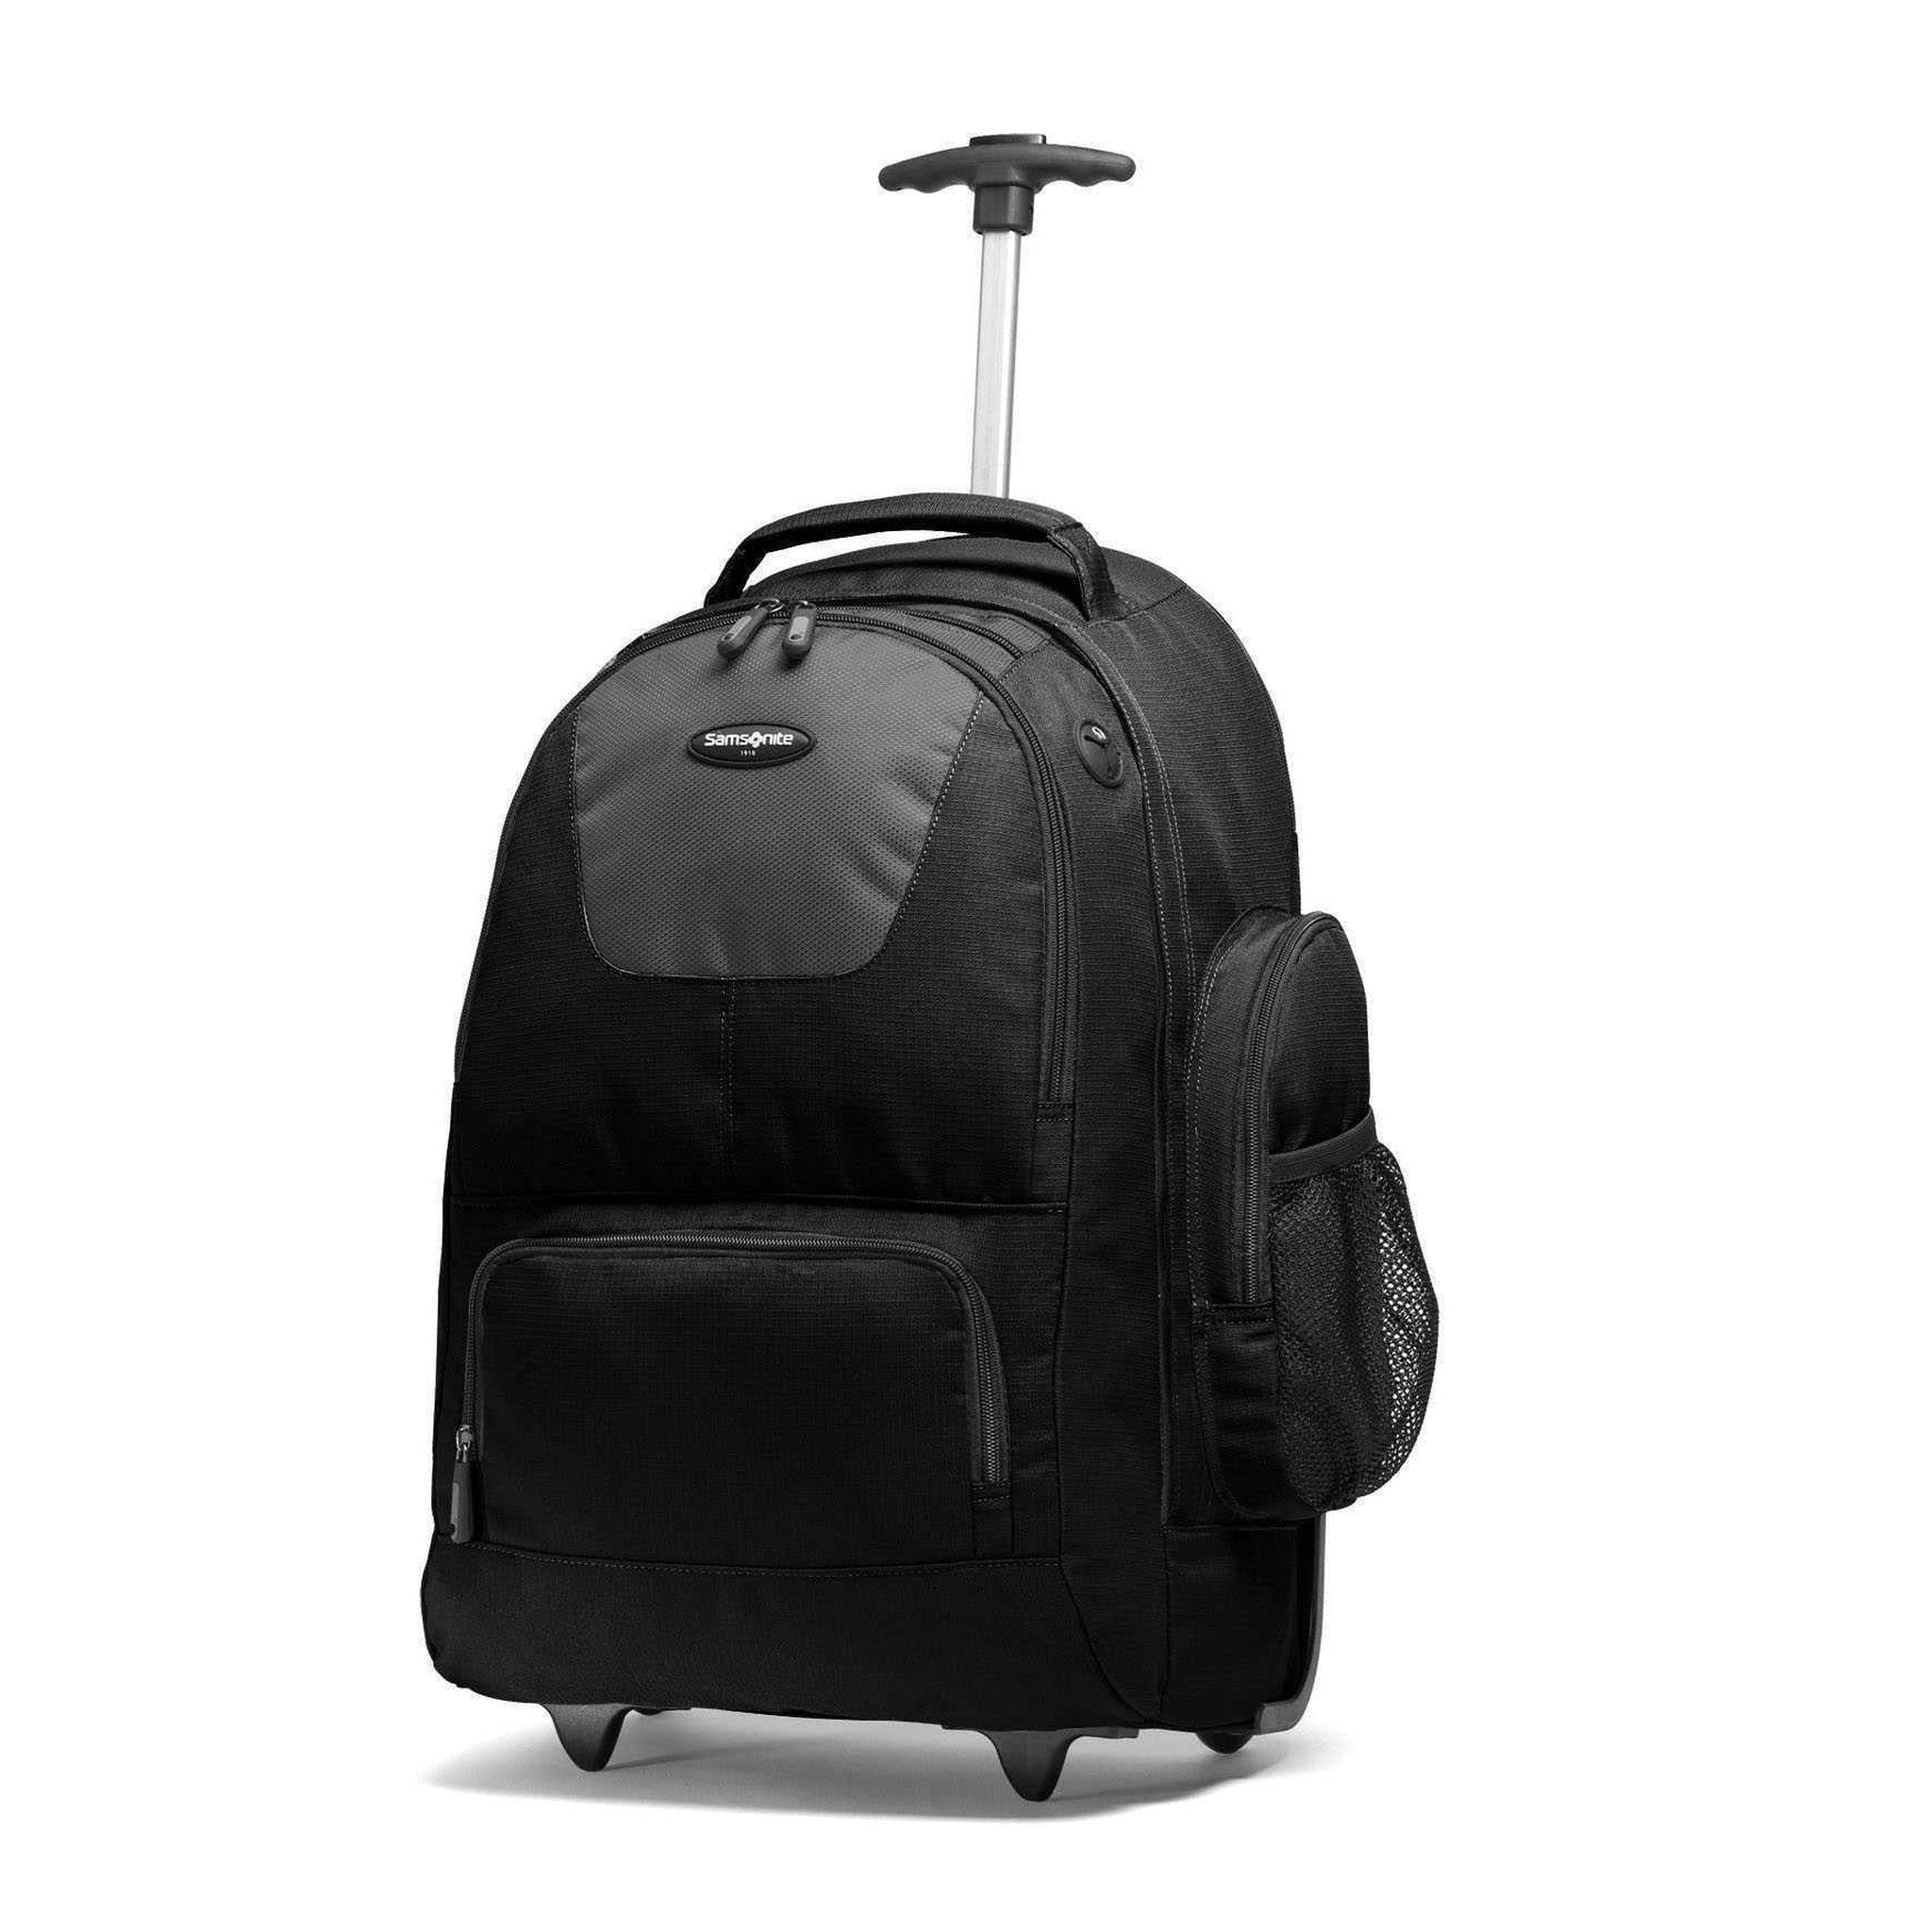 Intentie uitslag aankleden Samsonite 20" Wheeled Backpack – Luggage Pros